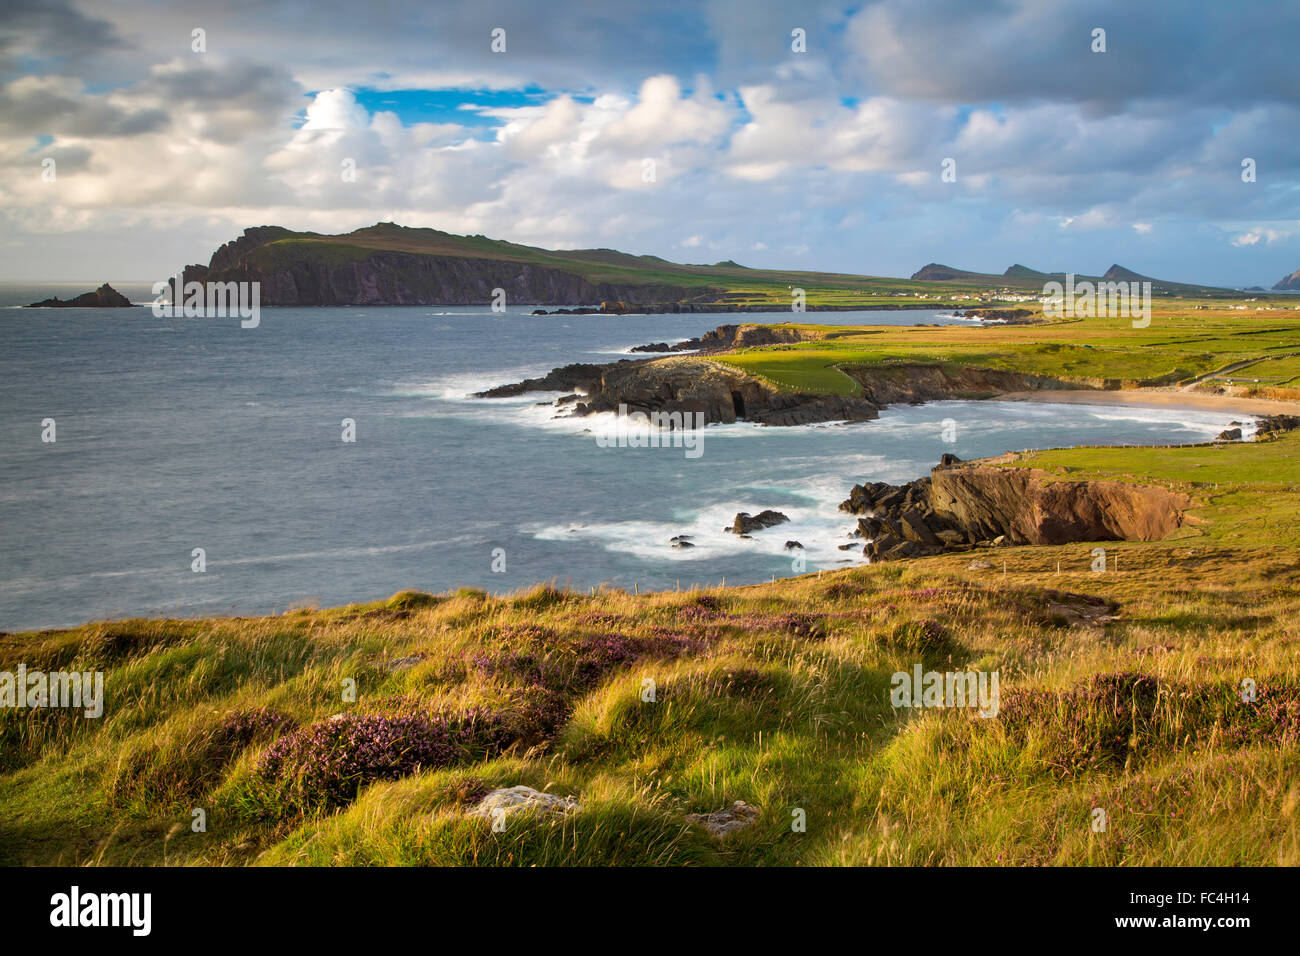 Sera La luce solare sulla baia di Ballyferriter, Sybil punto e i picchi delle Tre Sorelle, penisola di Dingle, nella contea di Kerry, Irlanda Foto Stock